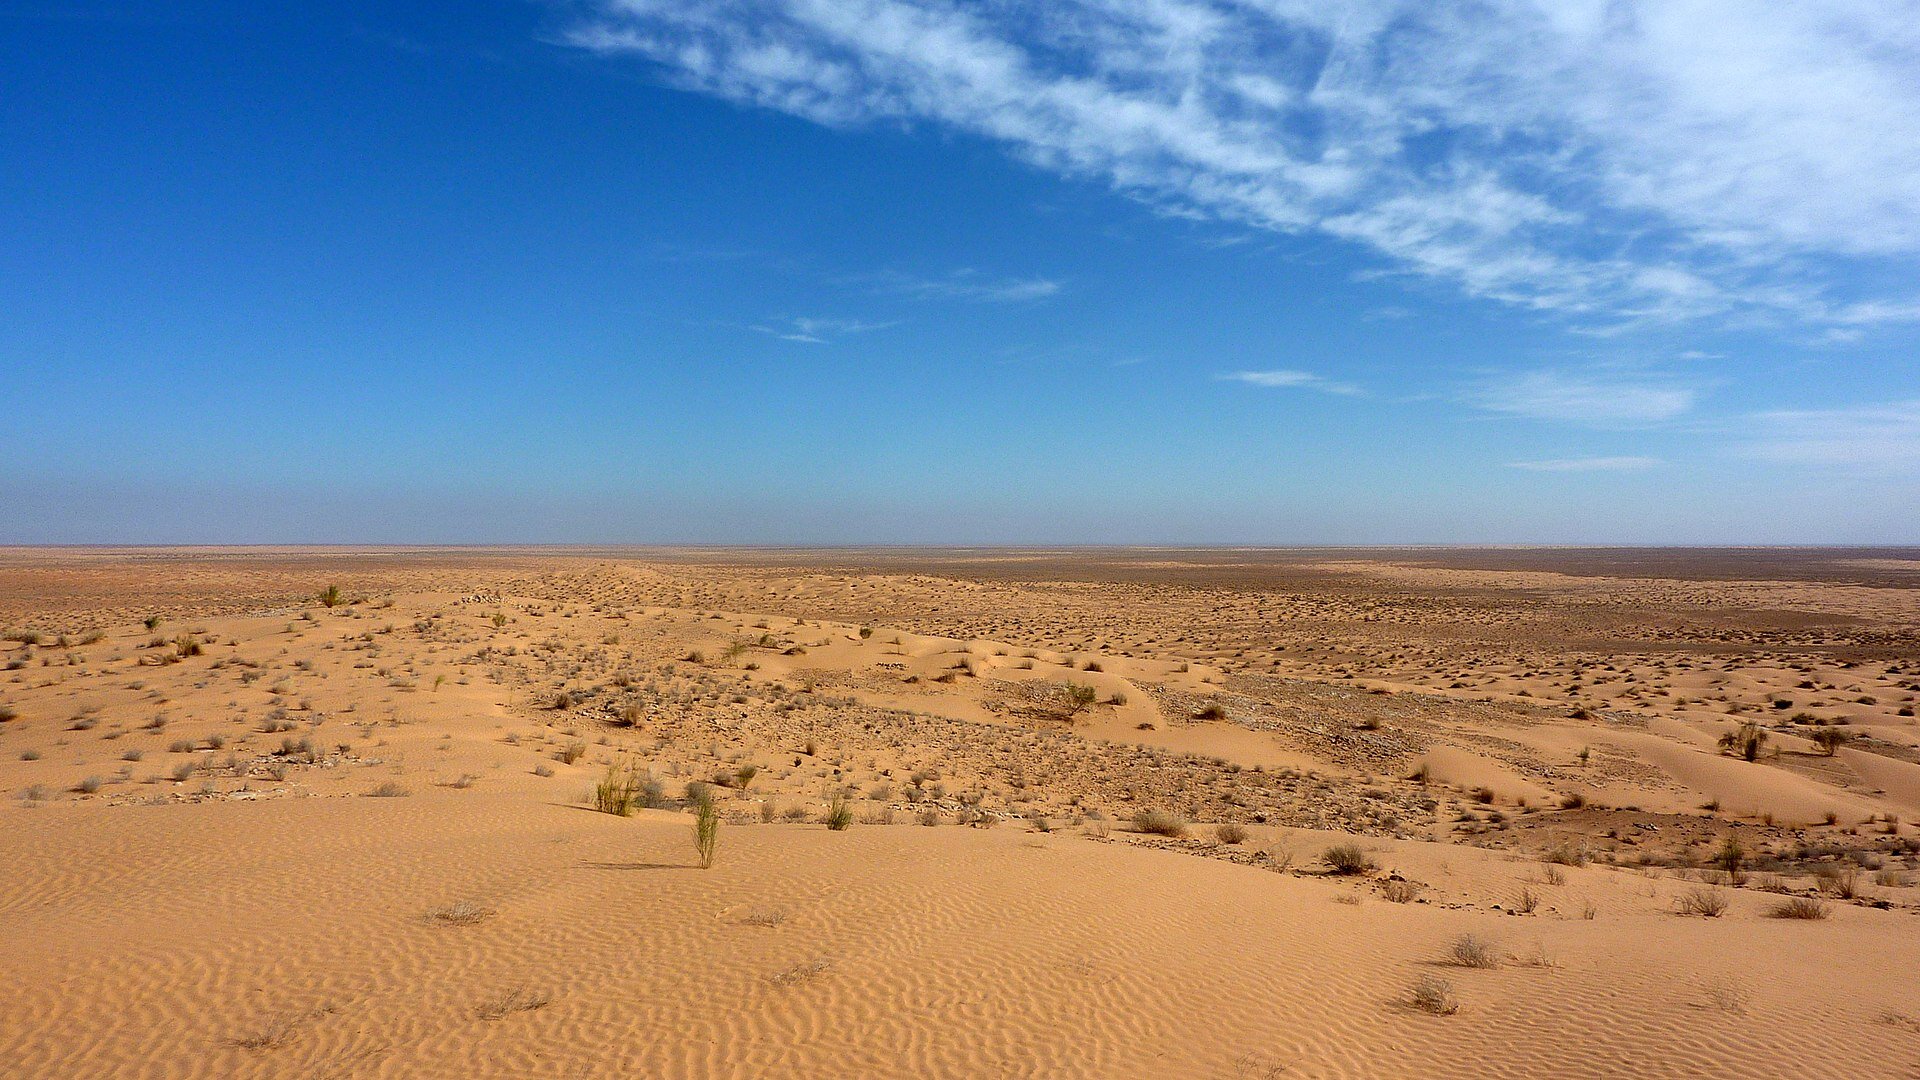 Zdjęcie przedstawia widok na płaski, rozległy teren pokryty piaskiem. Brak na nim zielonej, bujnej roślinności, są jedynie niewielkie, żółte rośliny. Nad pustynią rozciąga się niebieskie niebo.